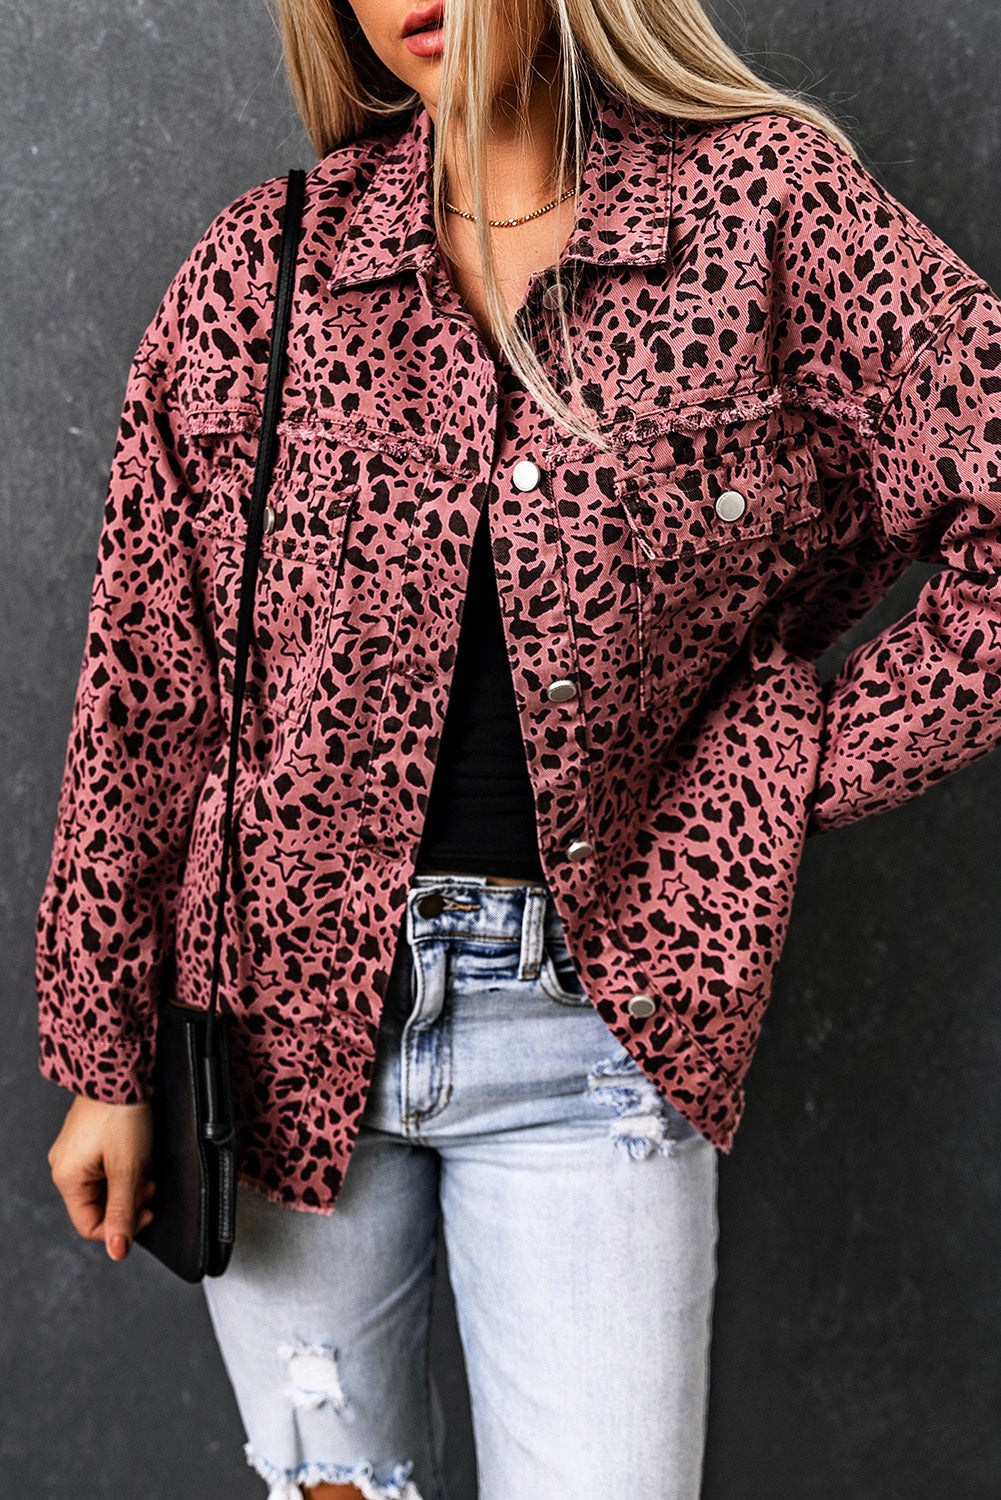 Geknöpfte Jeansjacke mit rosa Sternen- und Tierfleckenmuster